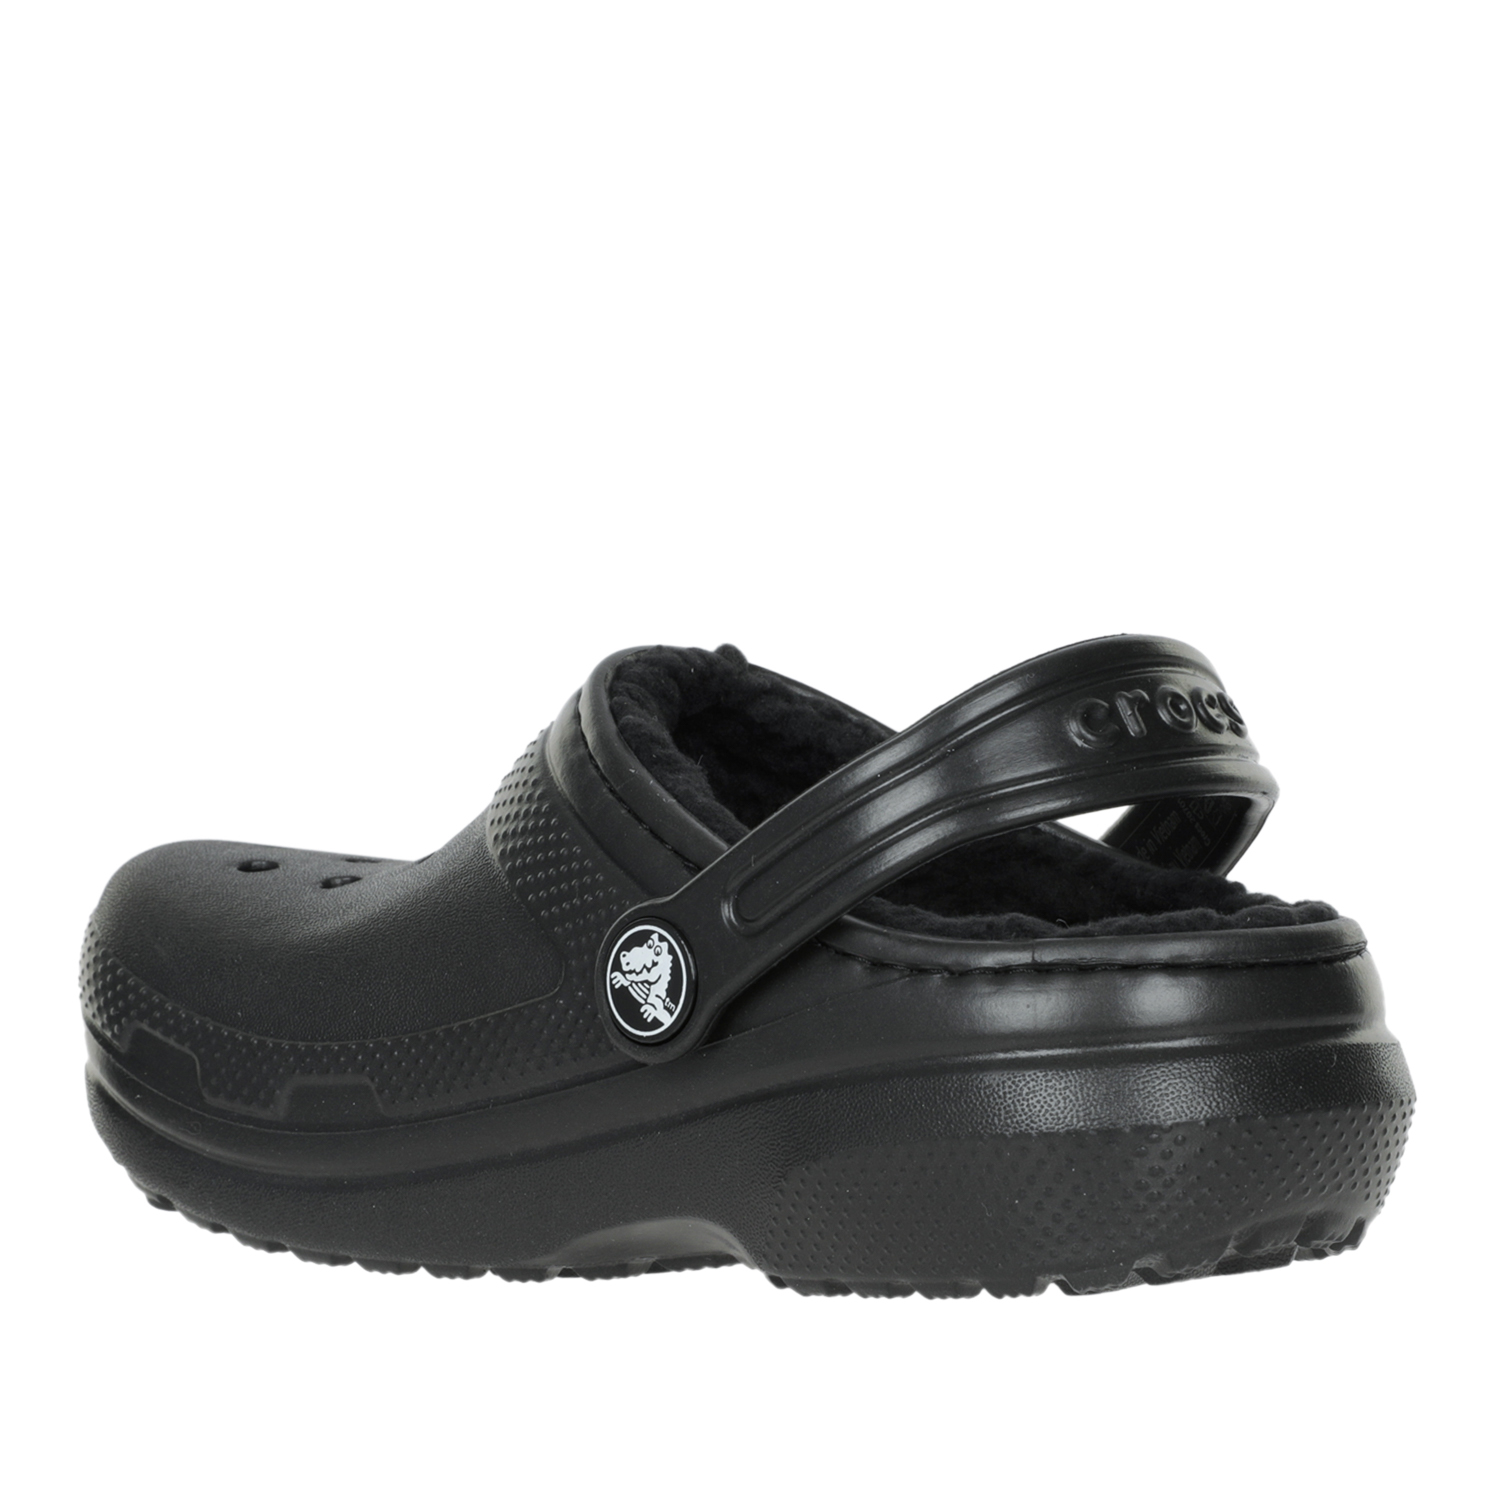 Сандалии детские Crocs Classic Lined Clog K Black/Black